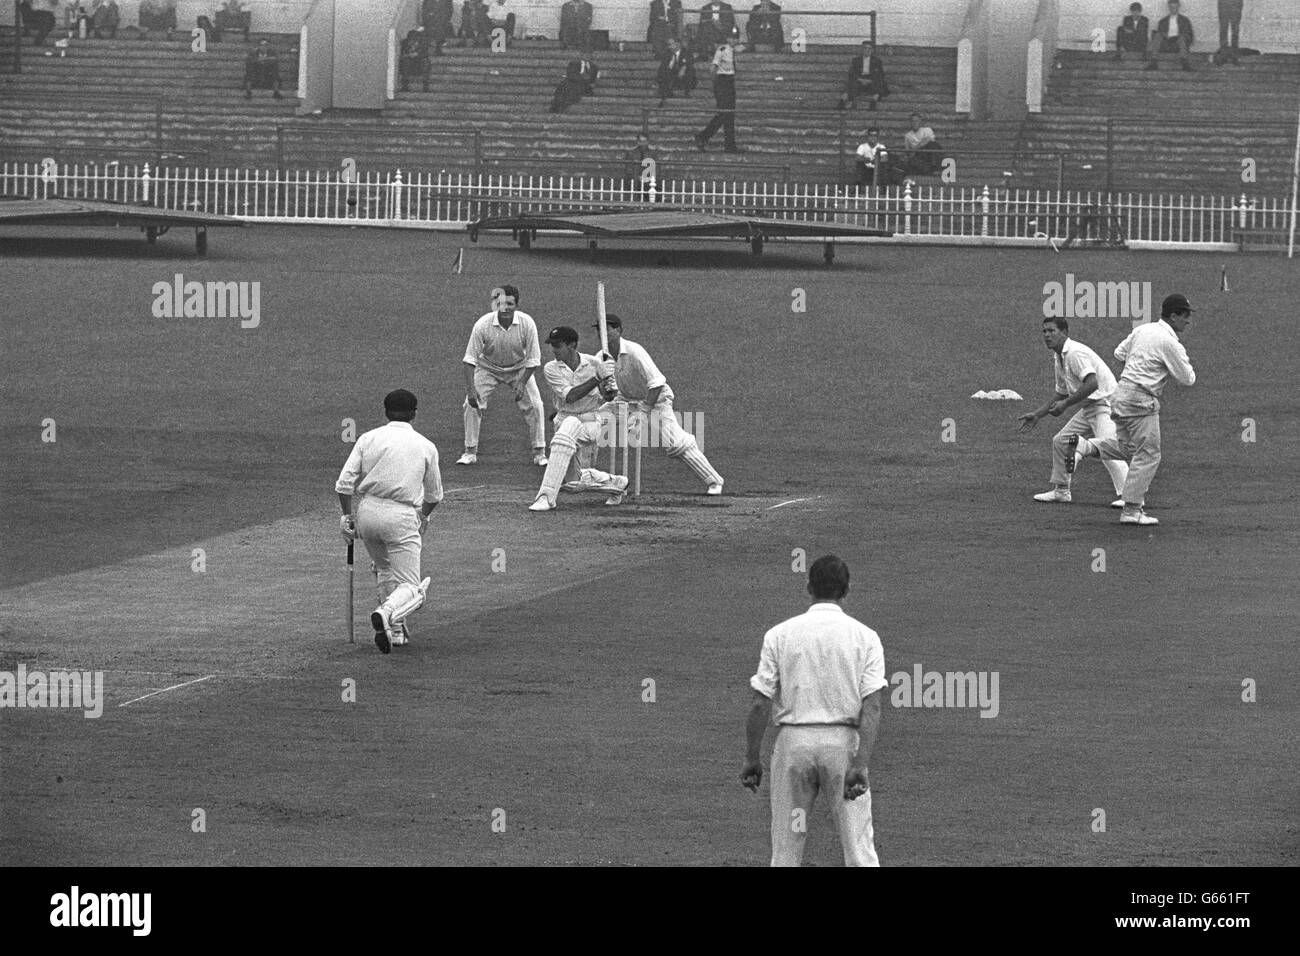 Cricket - Yorkshire v Australia - Bramall Lane, Sheffield. General action from the Yorkshire v Australia match. Stock Photo